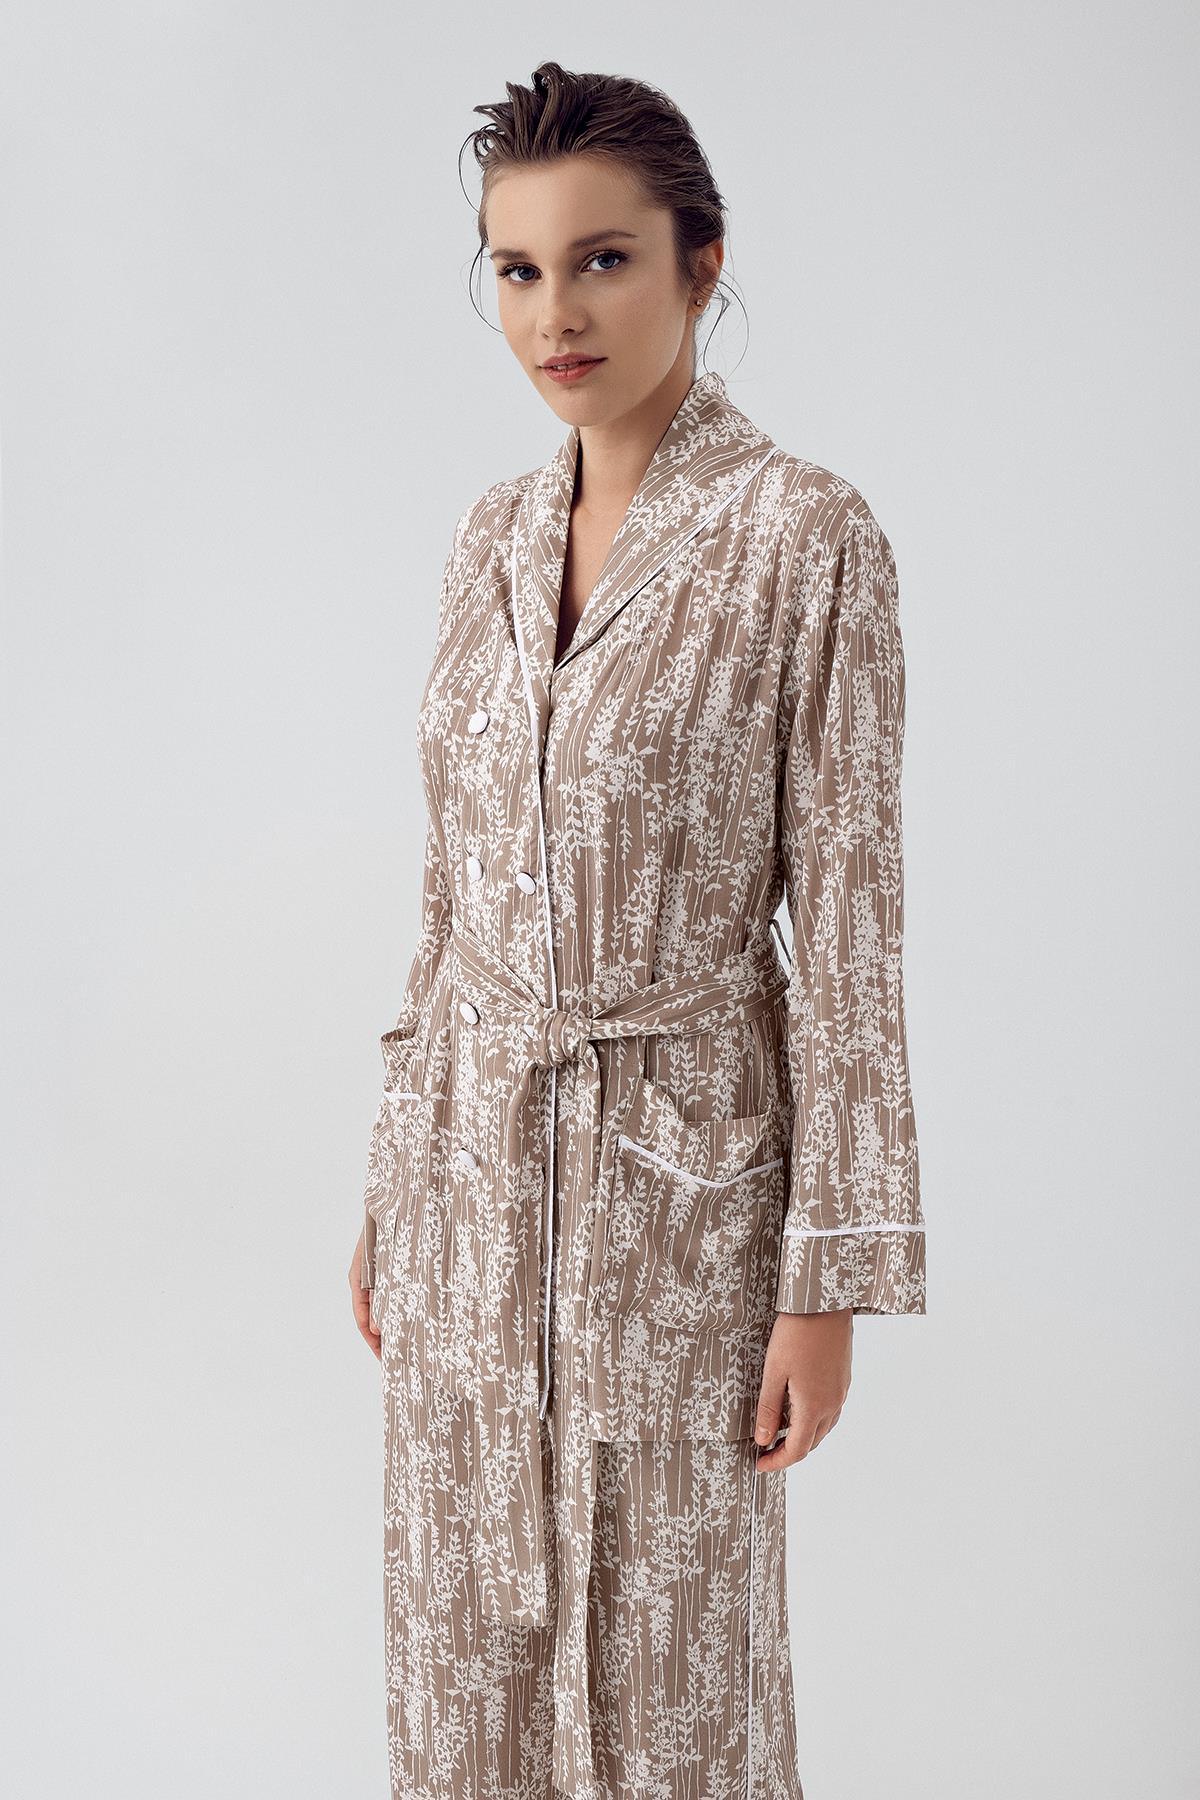 Desenli Düğmeli Uzun Kollu Kimono Esnek Viskoz Pijama Takımı 16205 - Artış Collection